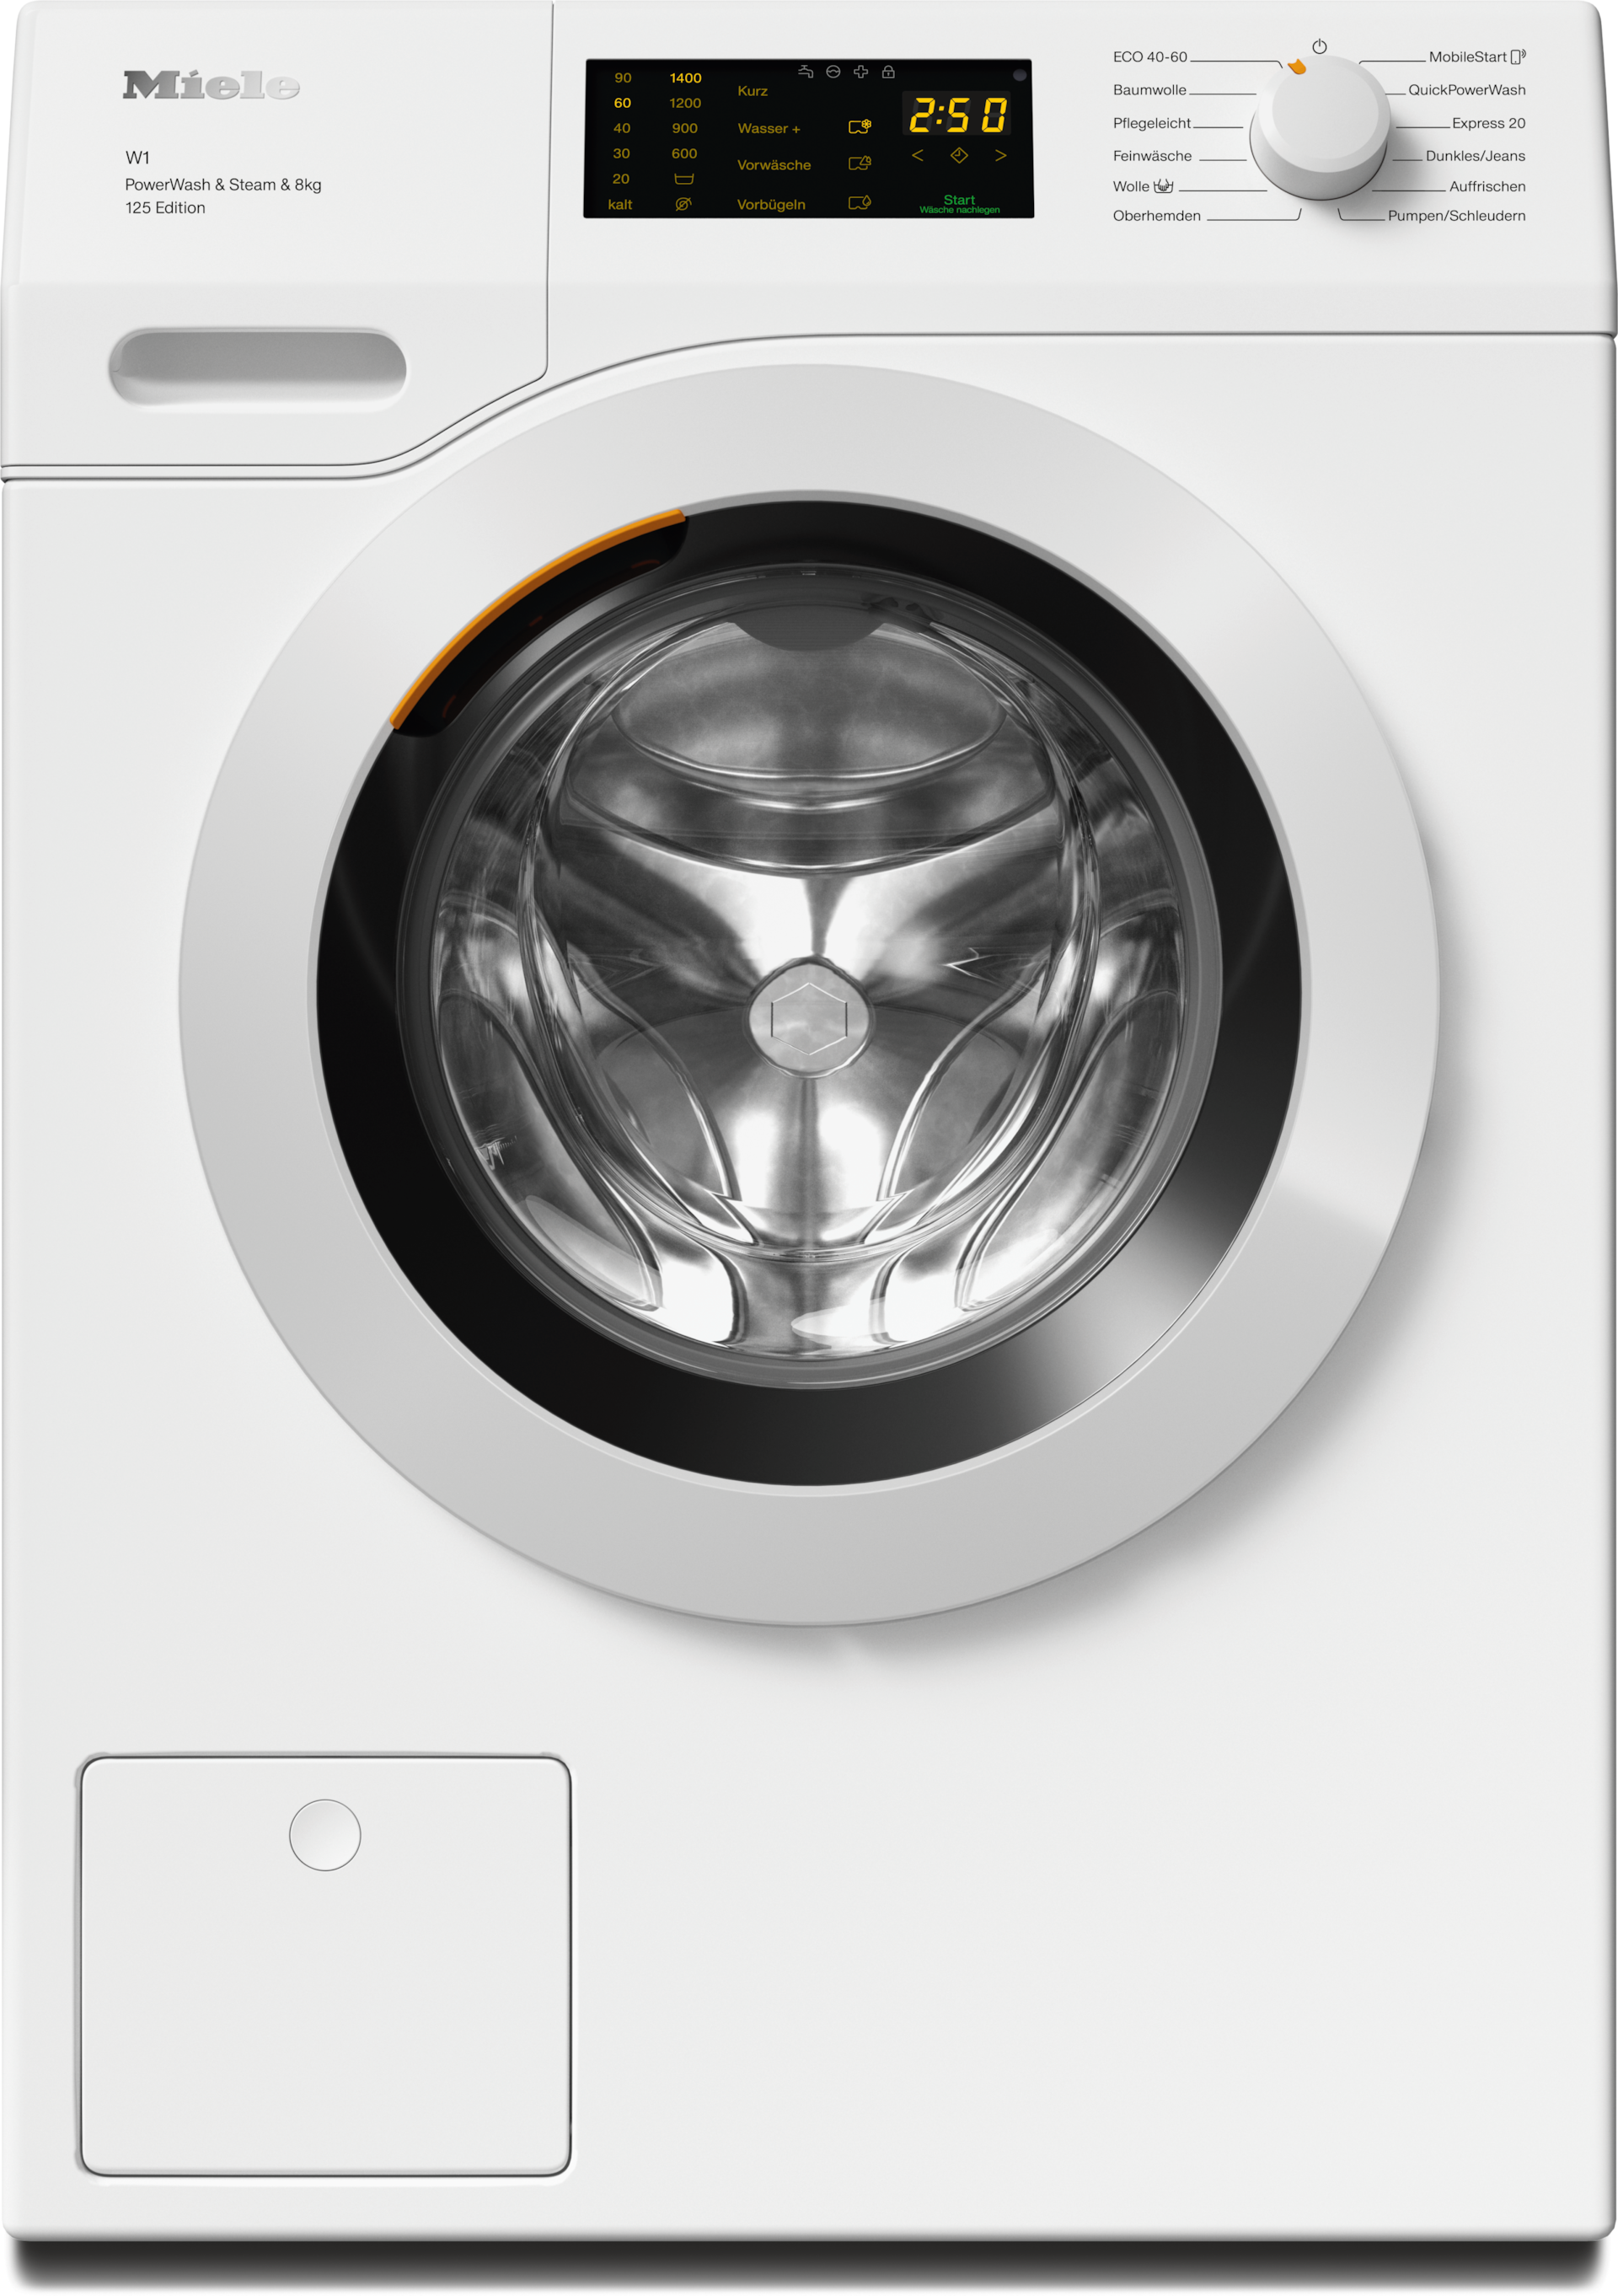 Waschmaschinen - WCB390 WPS 125 Edition - 1